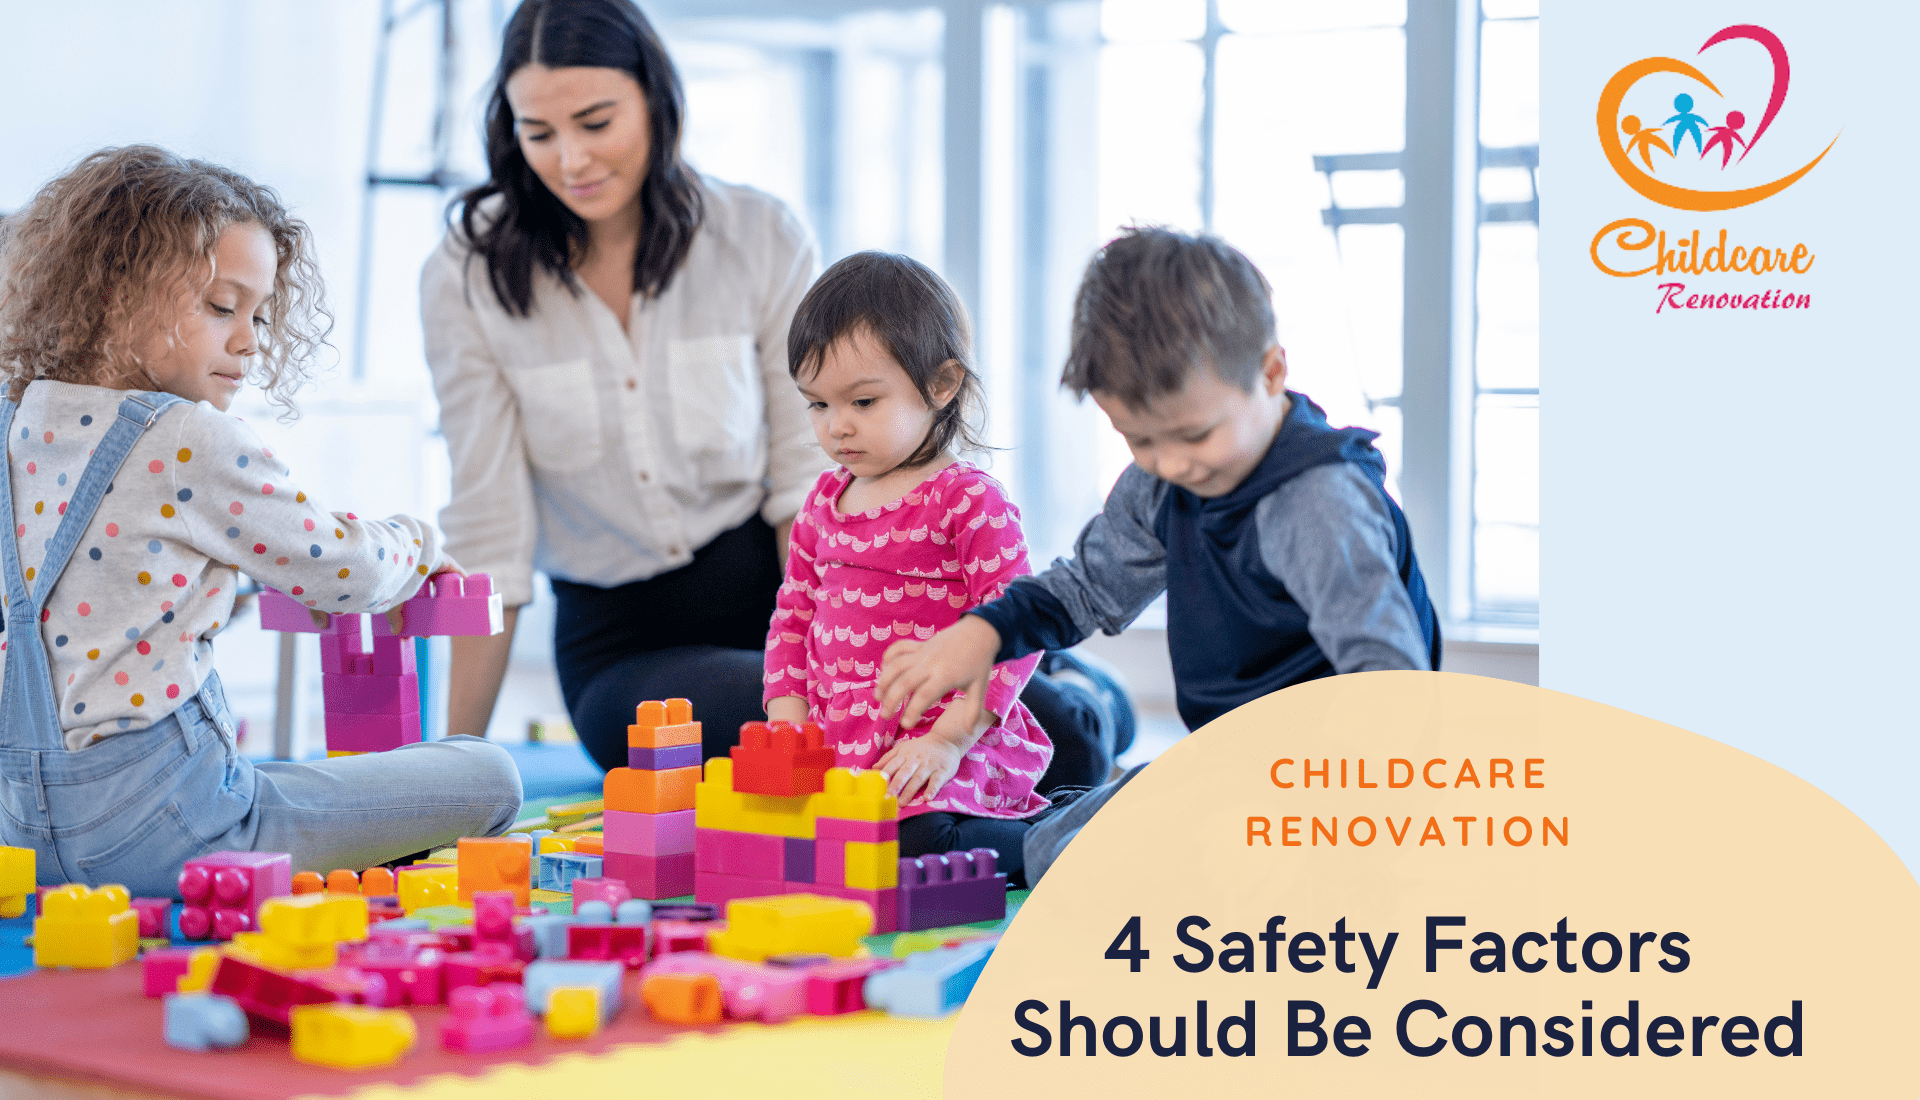 Childcare Renovation Safety